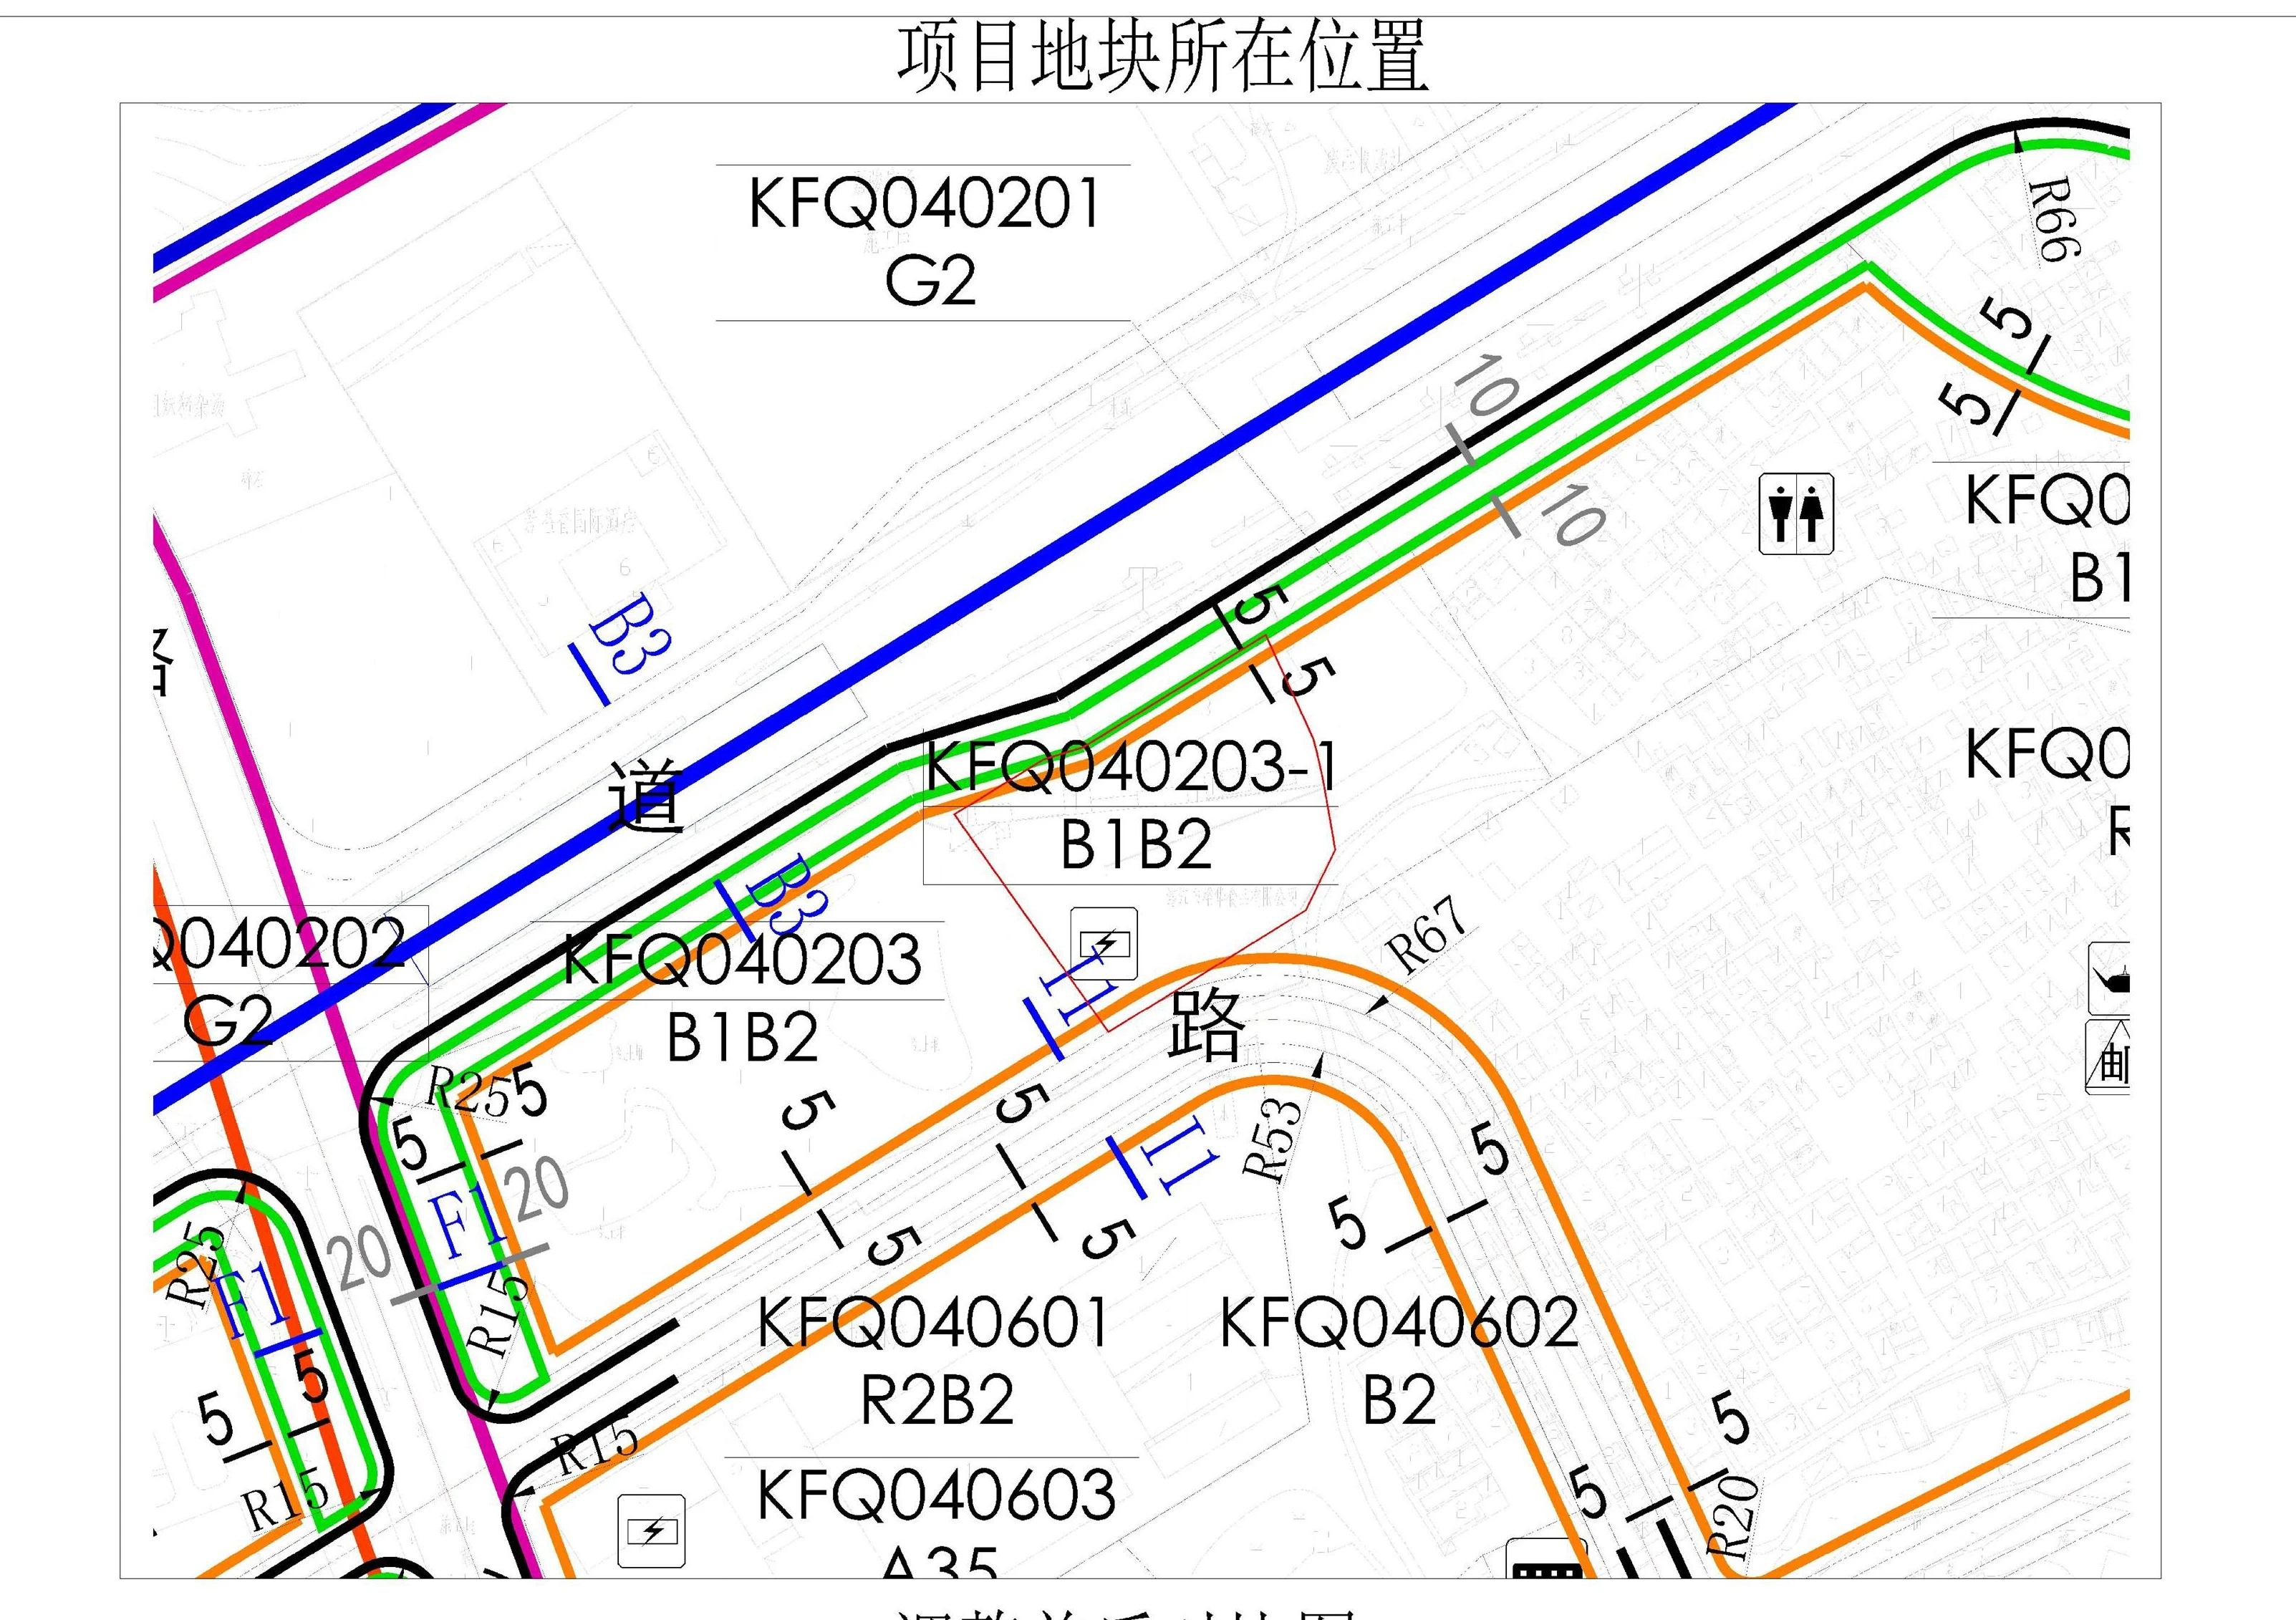 湛江开发区裕华大厦项目用地限高调整 调整后建筑限高为130米